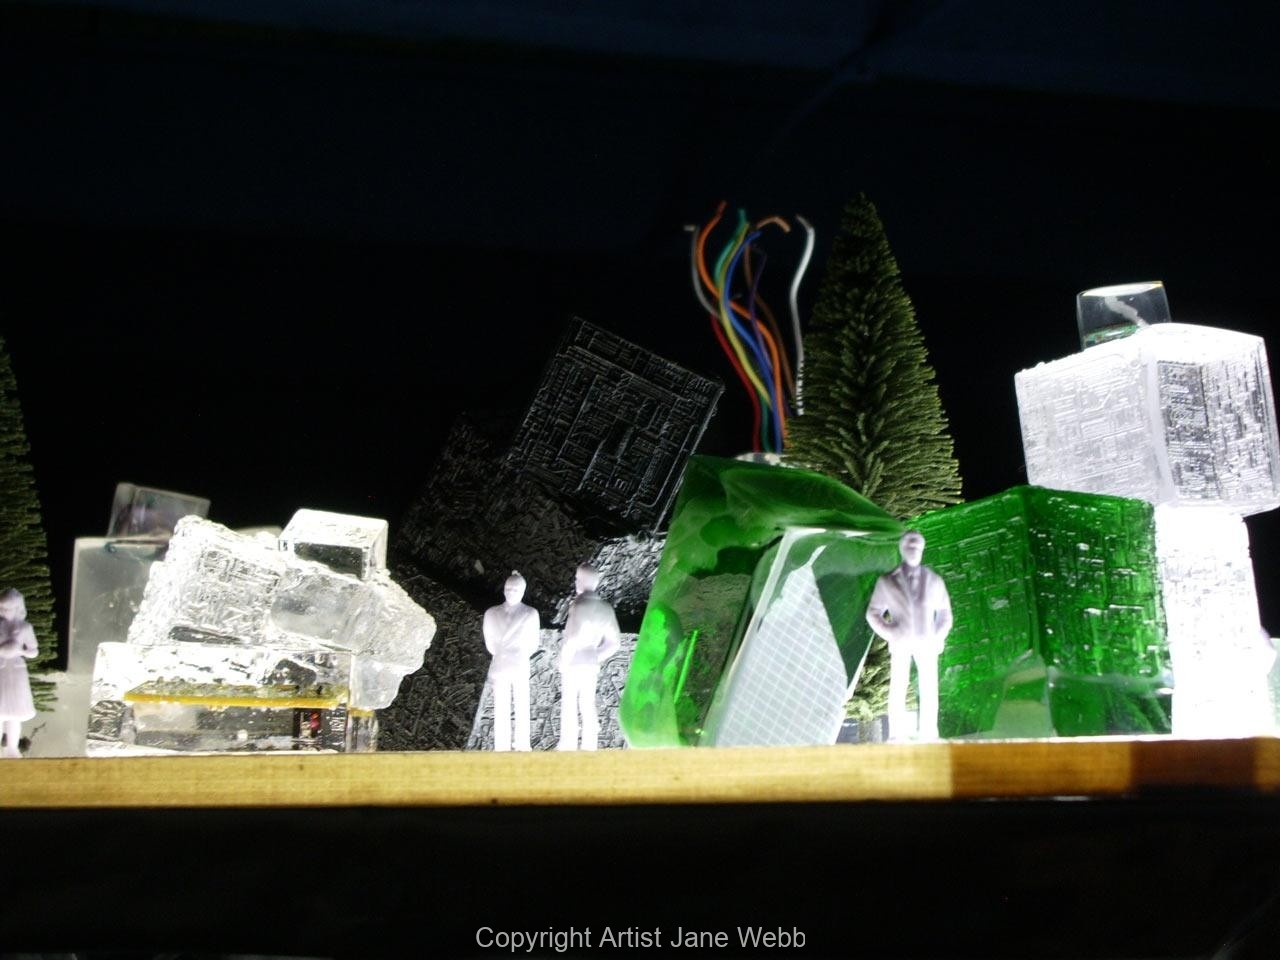 cast-glass-scyber-city-art-Jane-webb